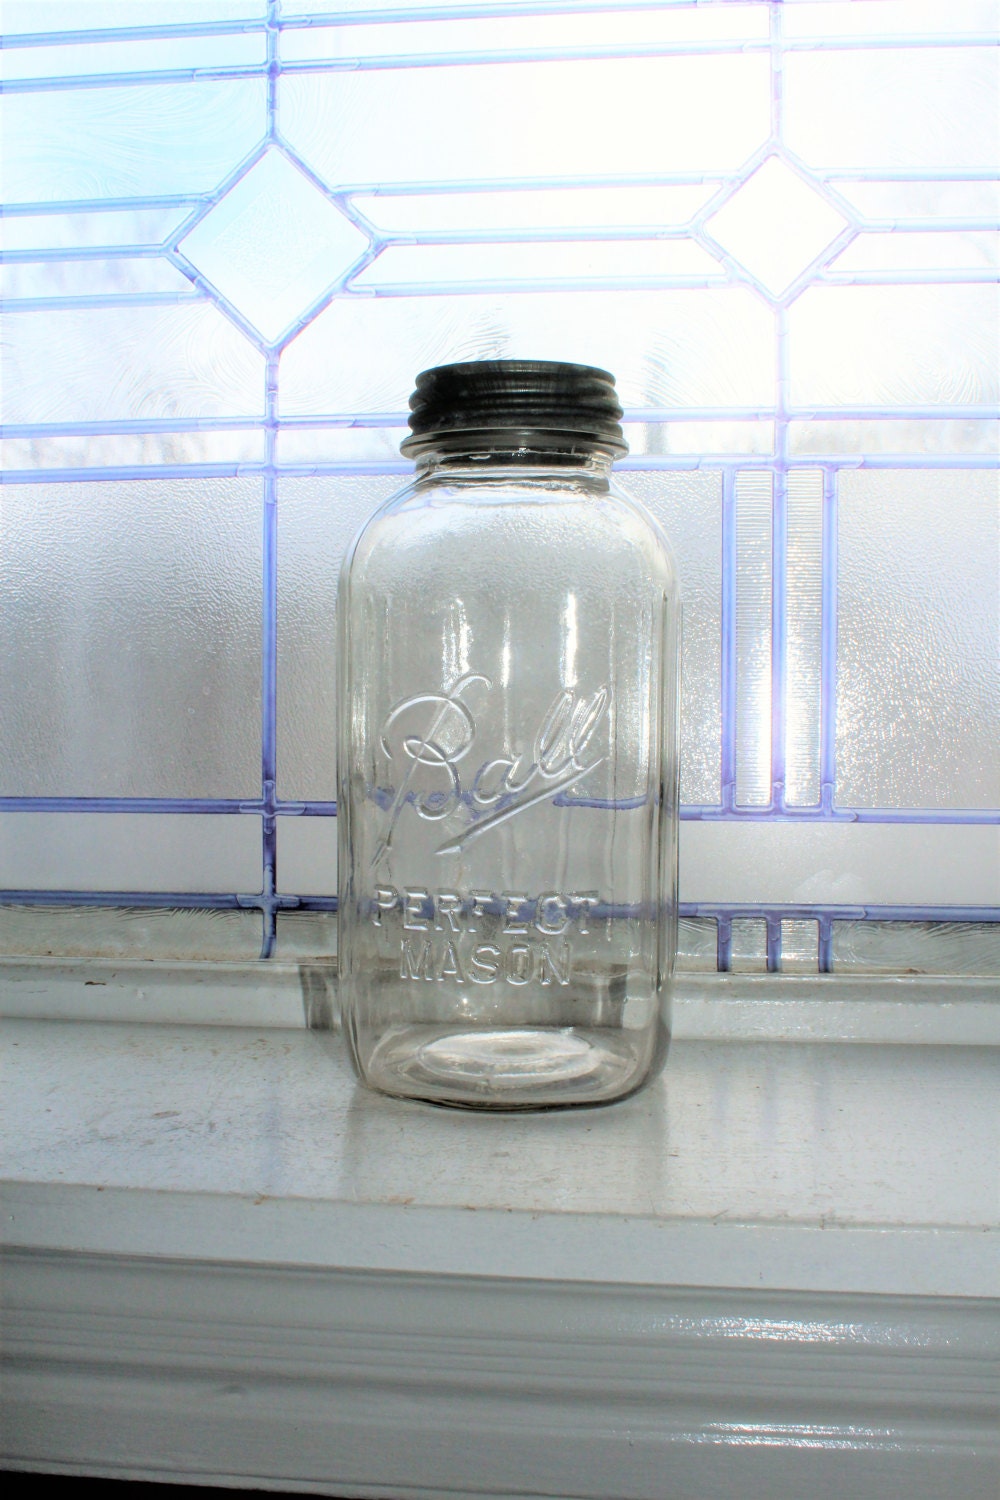 Ball® Half-Gallon Mason Jar